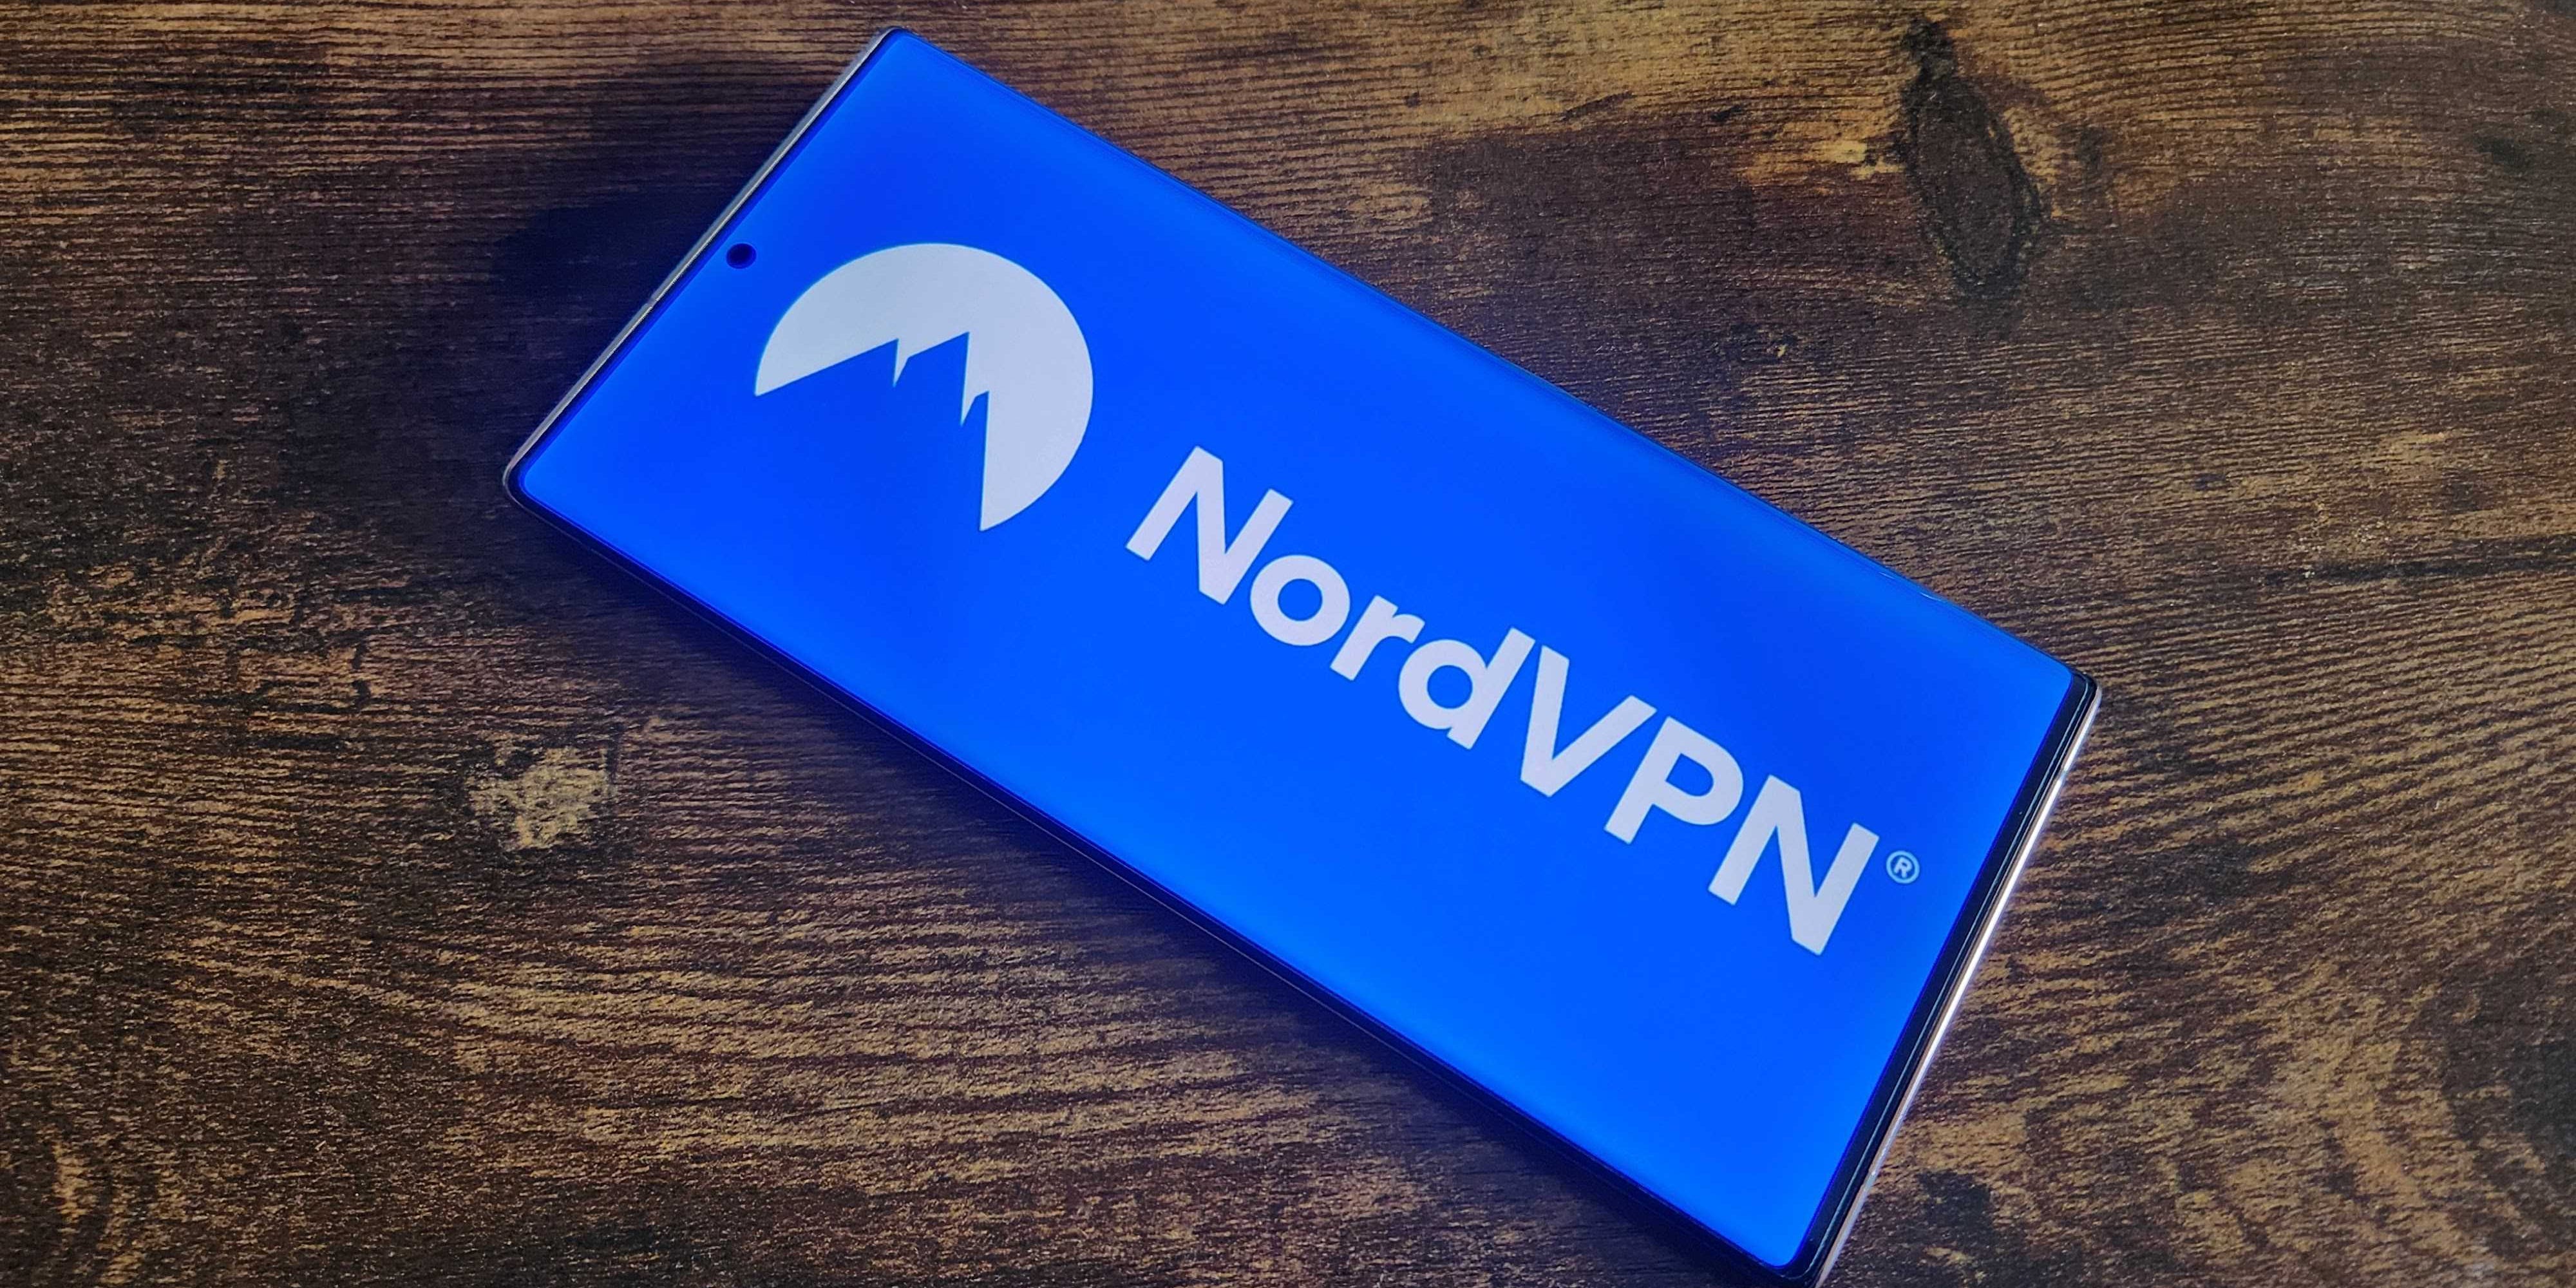 Das NordVPN-Logo wird auf einem Mobiltelefon angezeigt